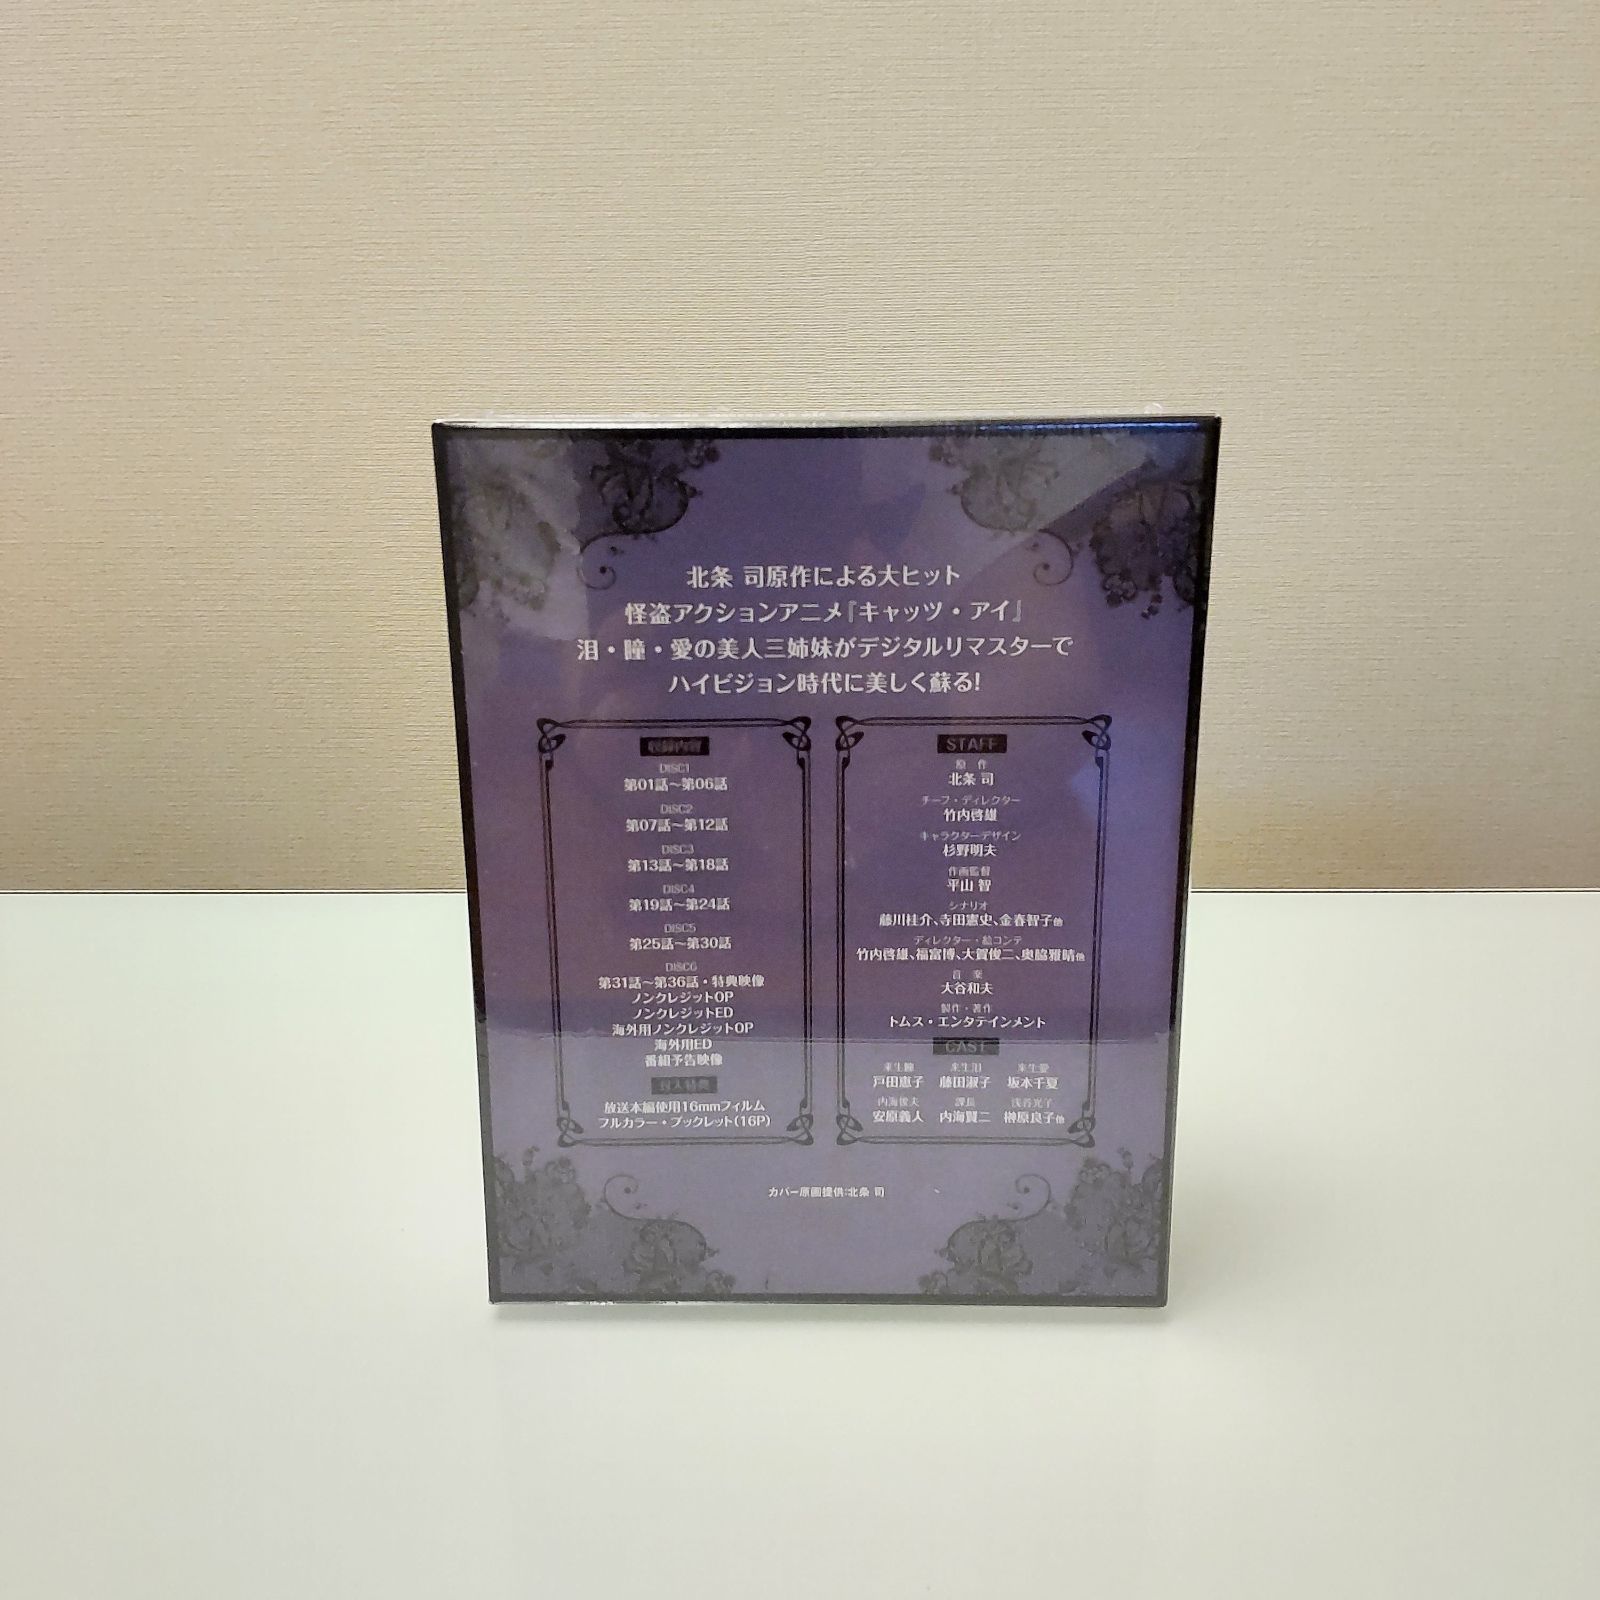 キャッツ・アイ Blu-ray Special BOX 期間限定生産版 - メルカリ